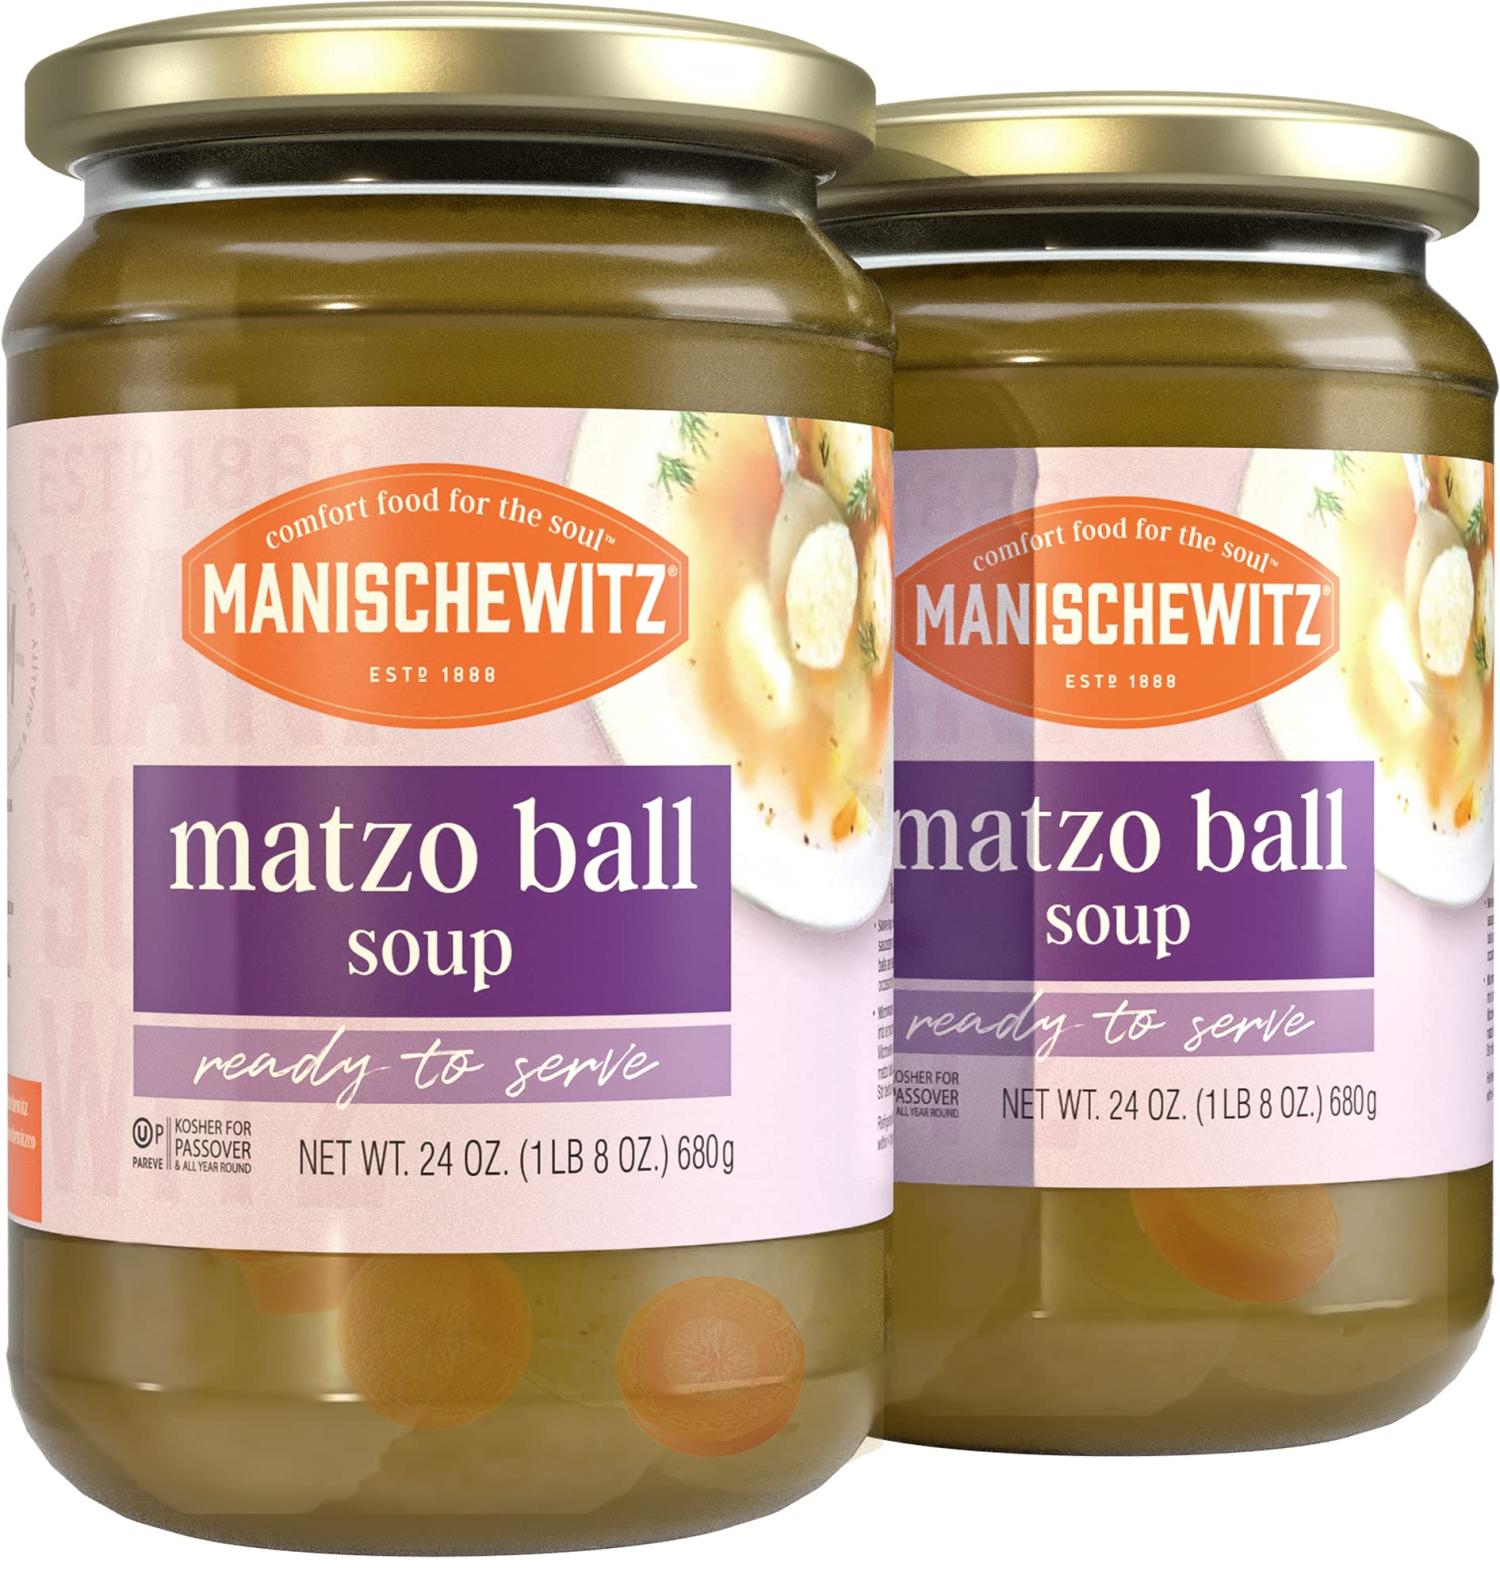 Matzo Ball Soup - Manischewitz